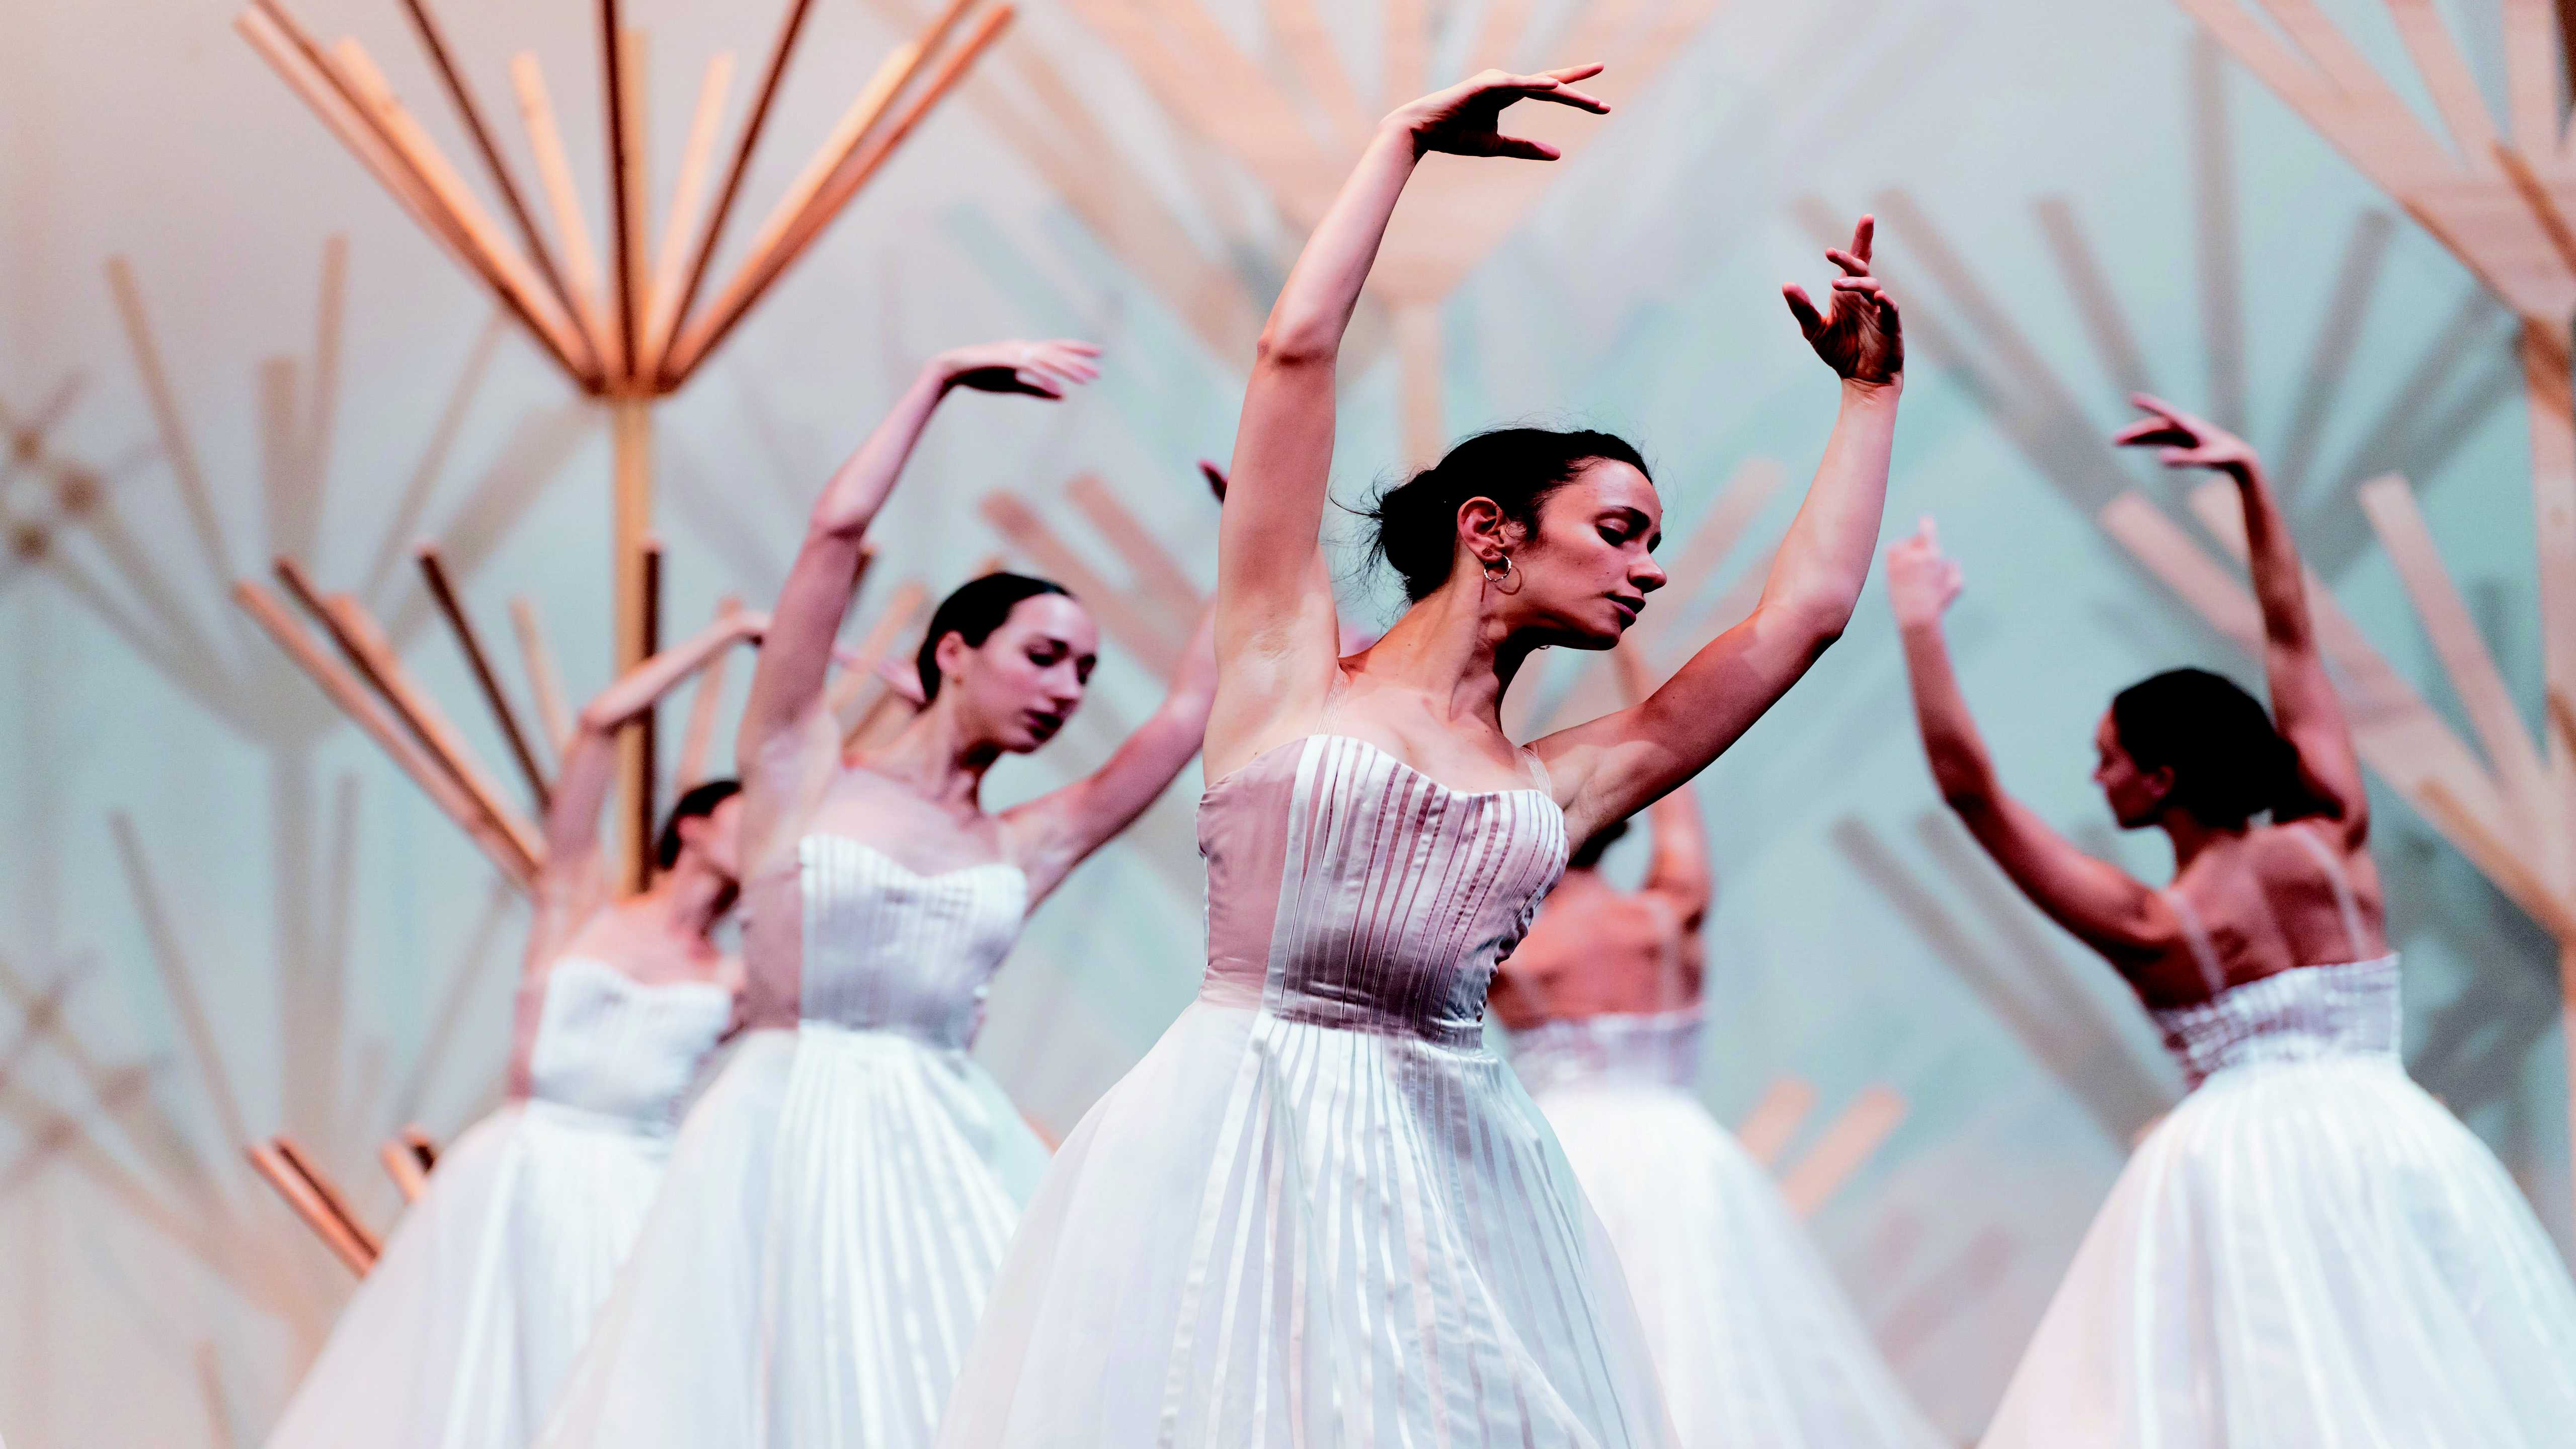 Le Ballet de l’Opéra National de Bordeaux présente une nouvelle production de "Giselle"